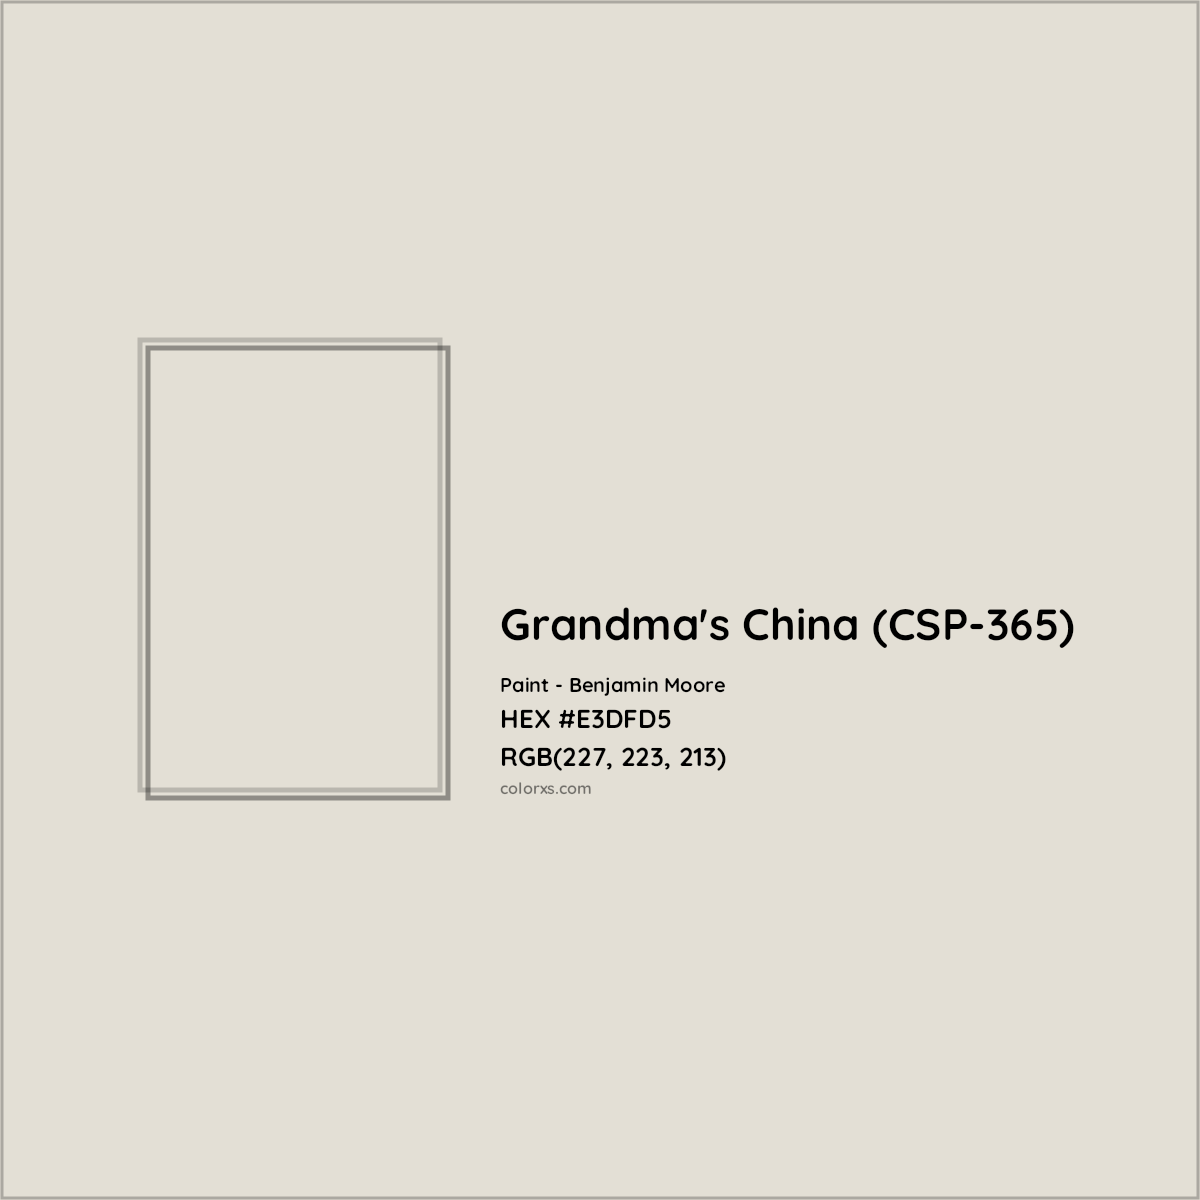 HEX #E3DFD5 Grandma's China (CSP-365) Paint Benjamin Moore - Color Code